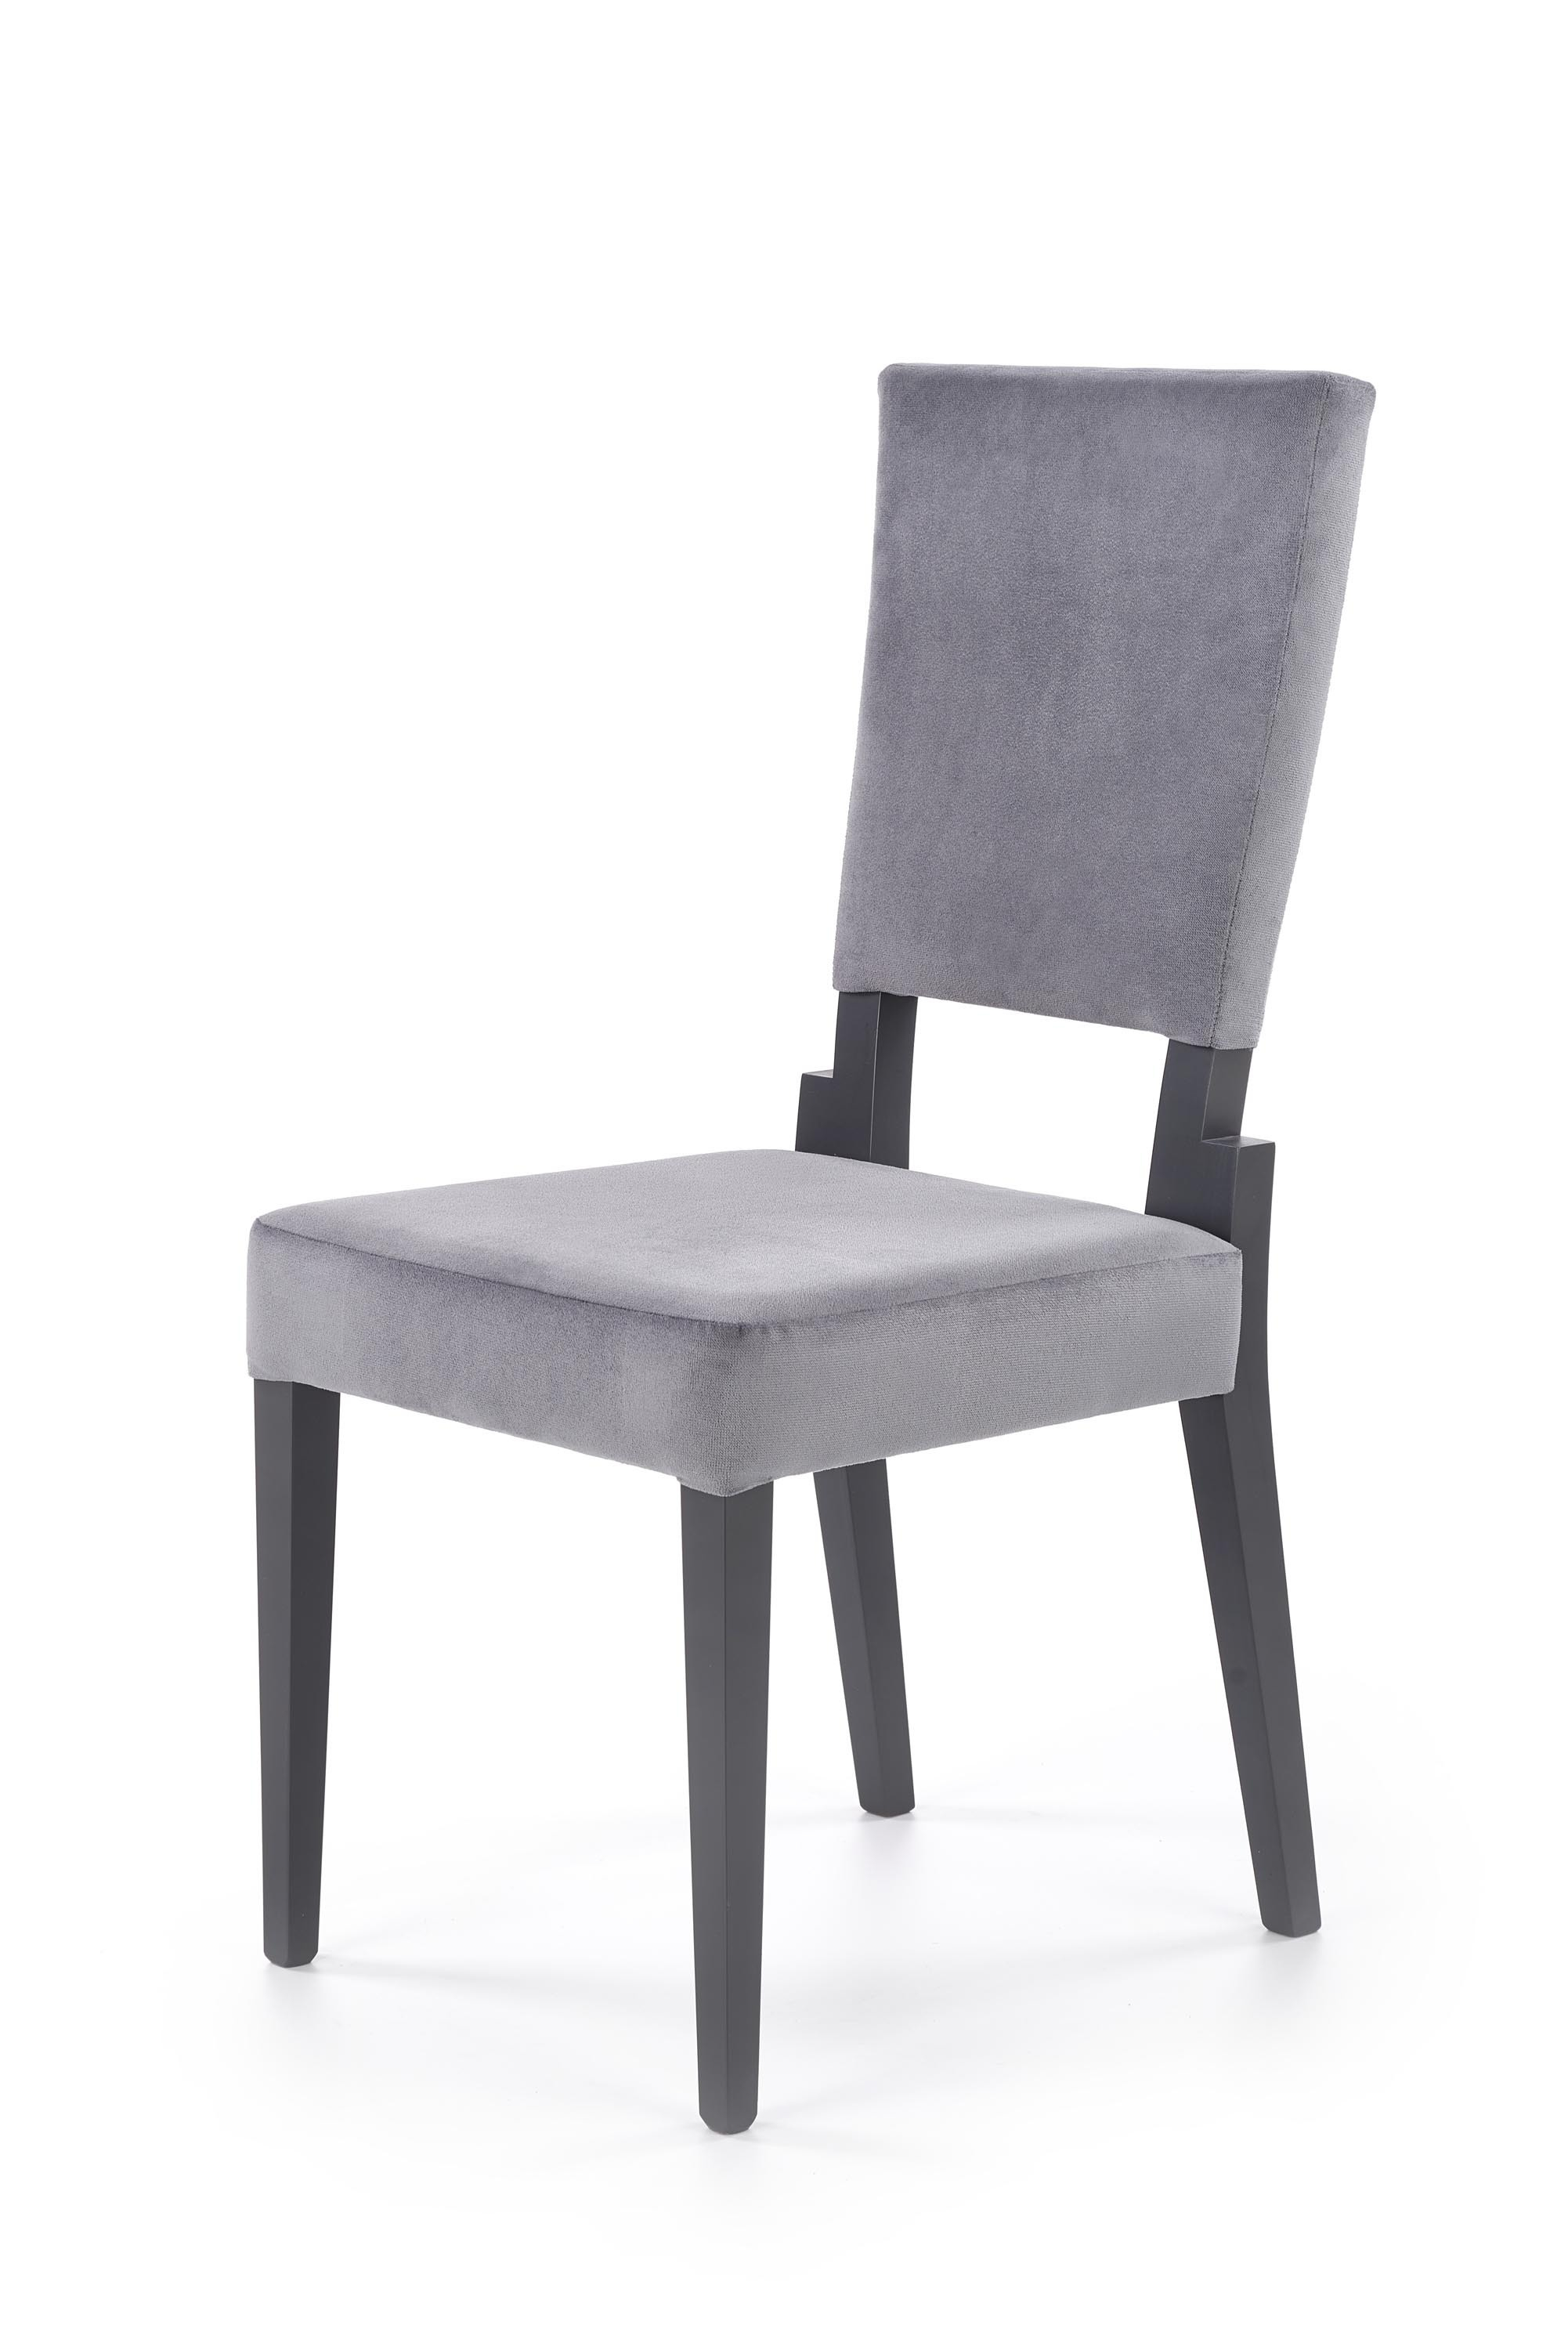 SORBUS krzesło, tapicerka - popielaty, nogi - grafitowe